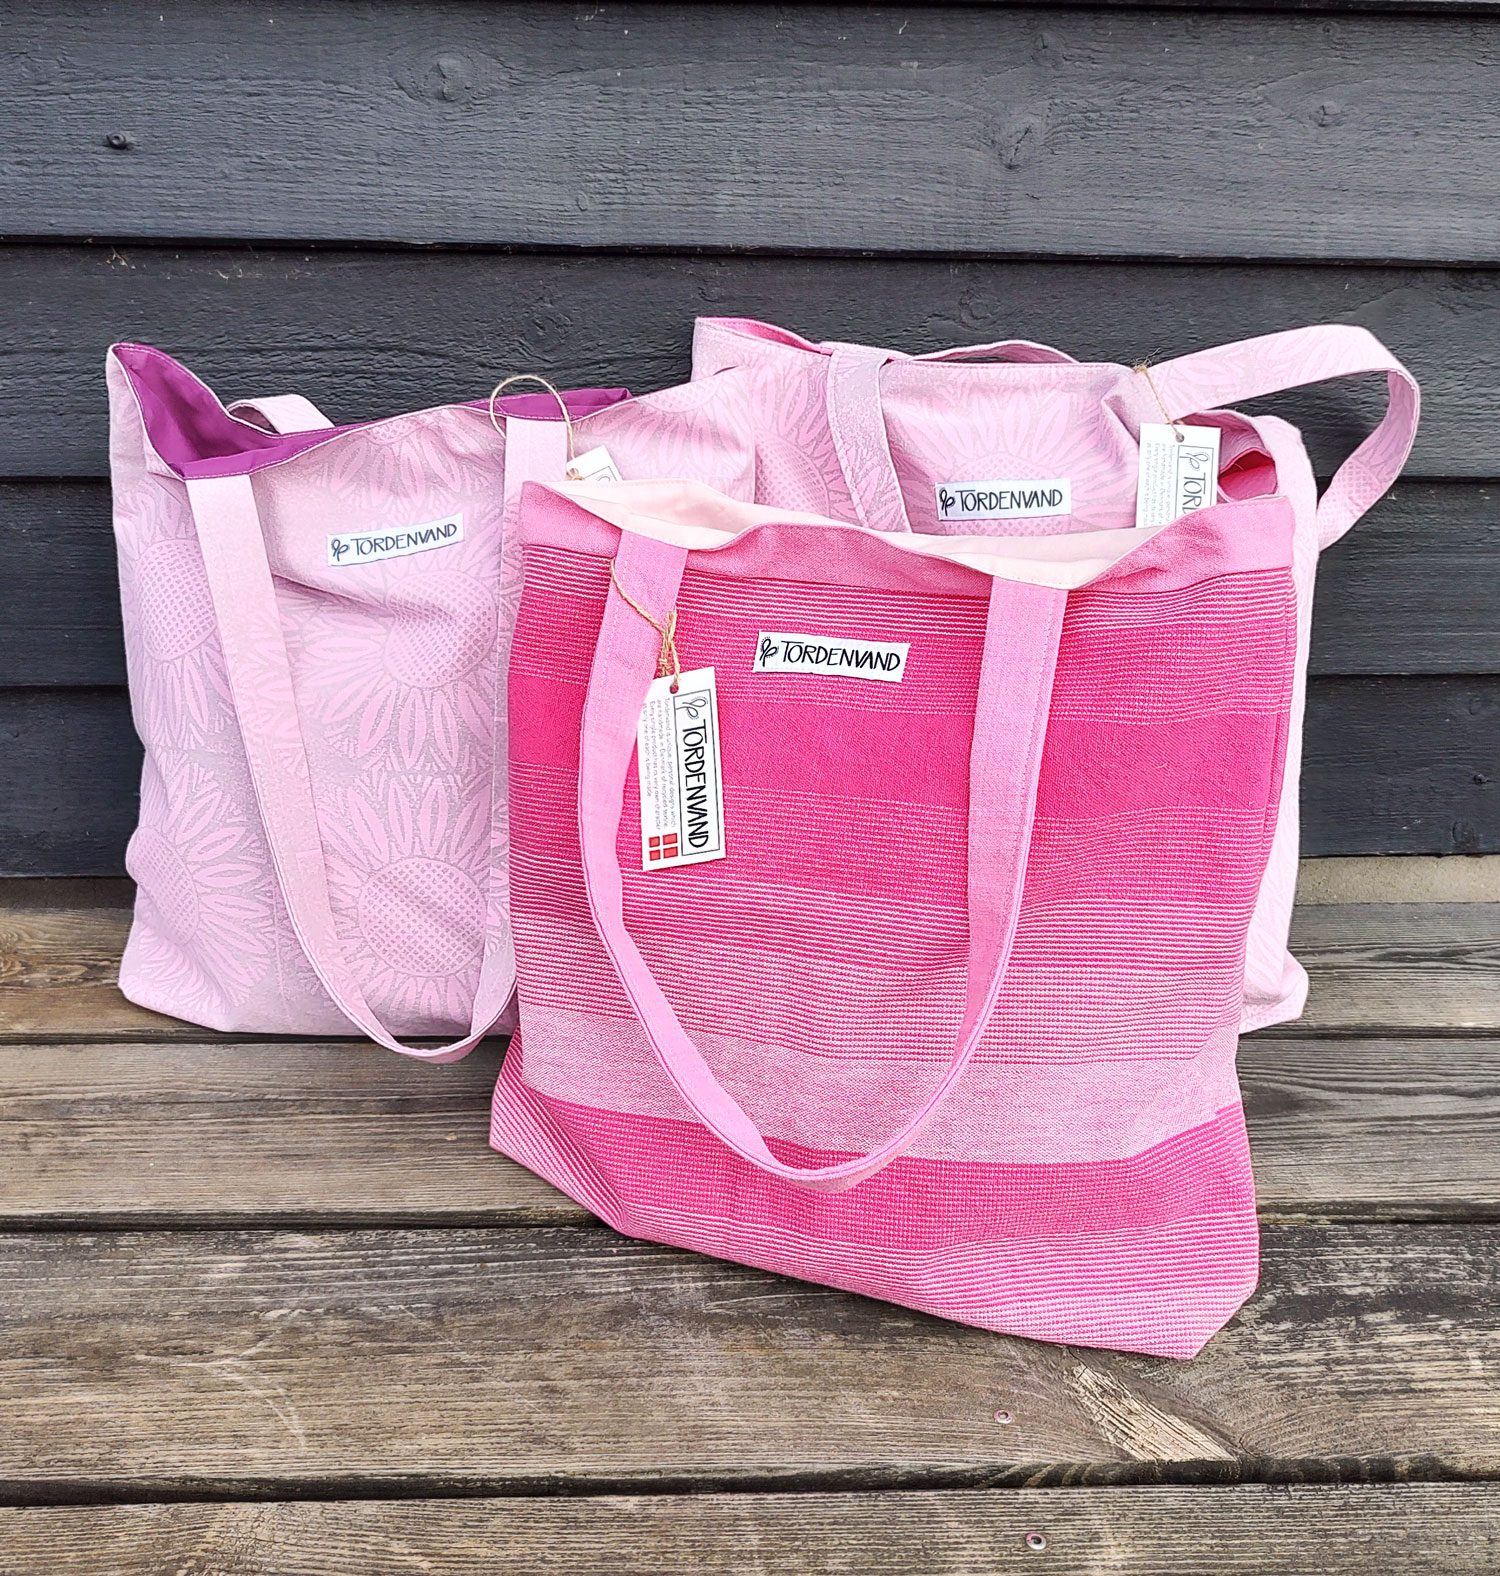 Tøm skraldespanden blyant lejlighed Upcycled taske pink serie - Design agger - glem alt om plastikposer